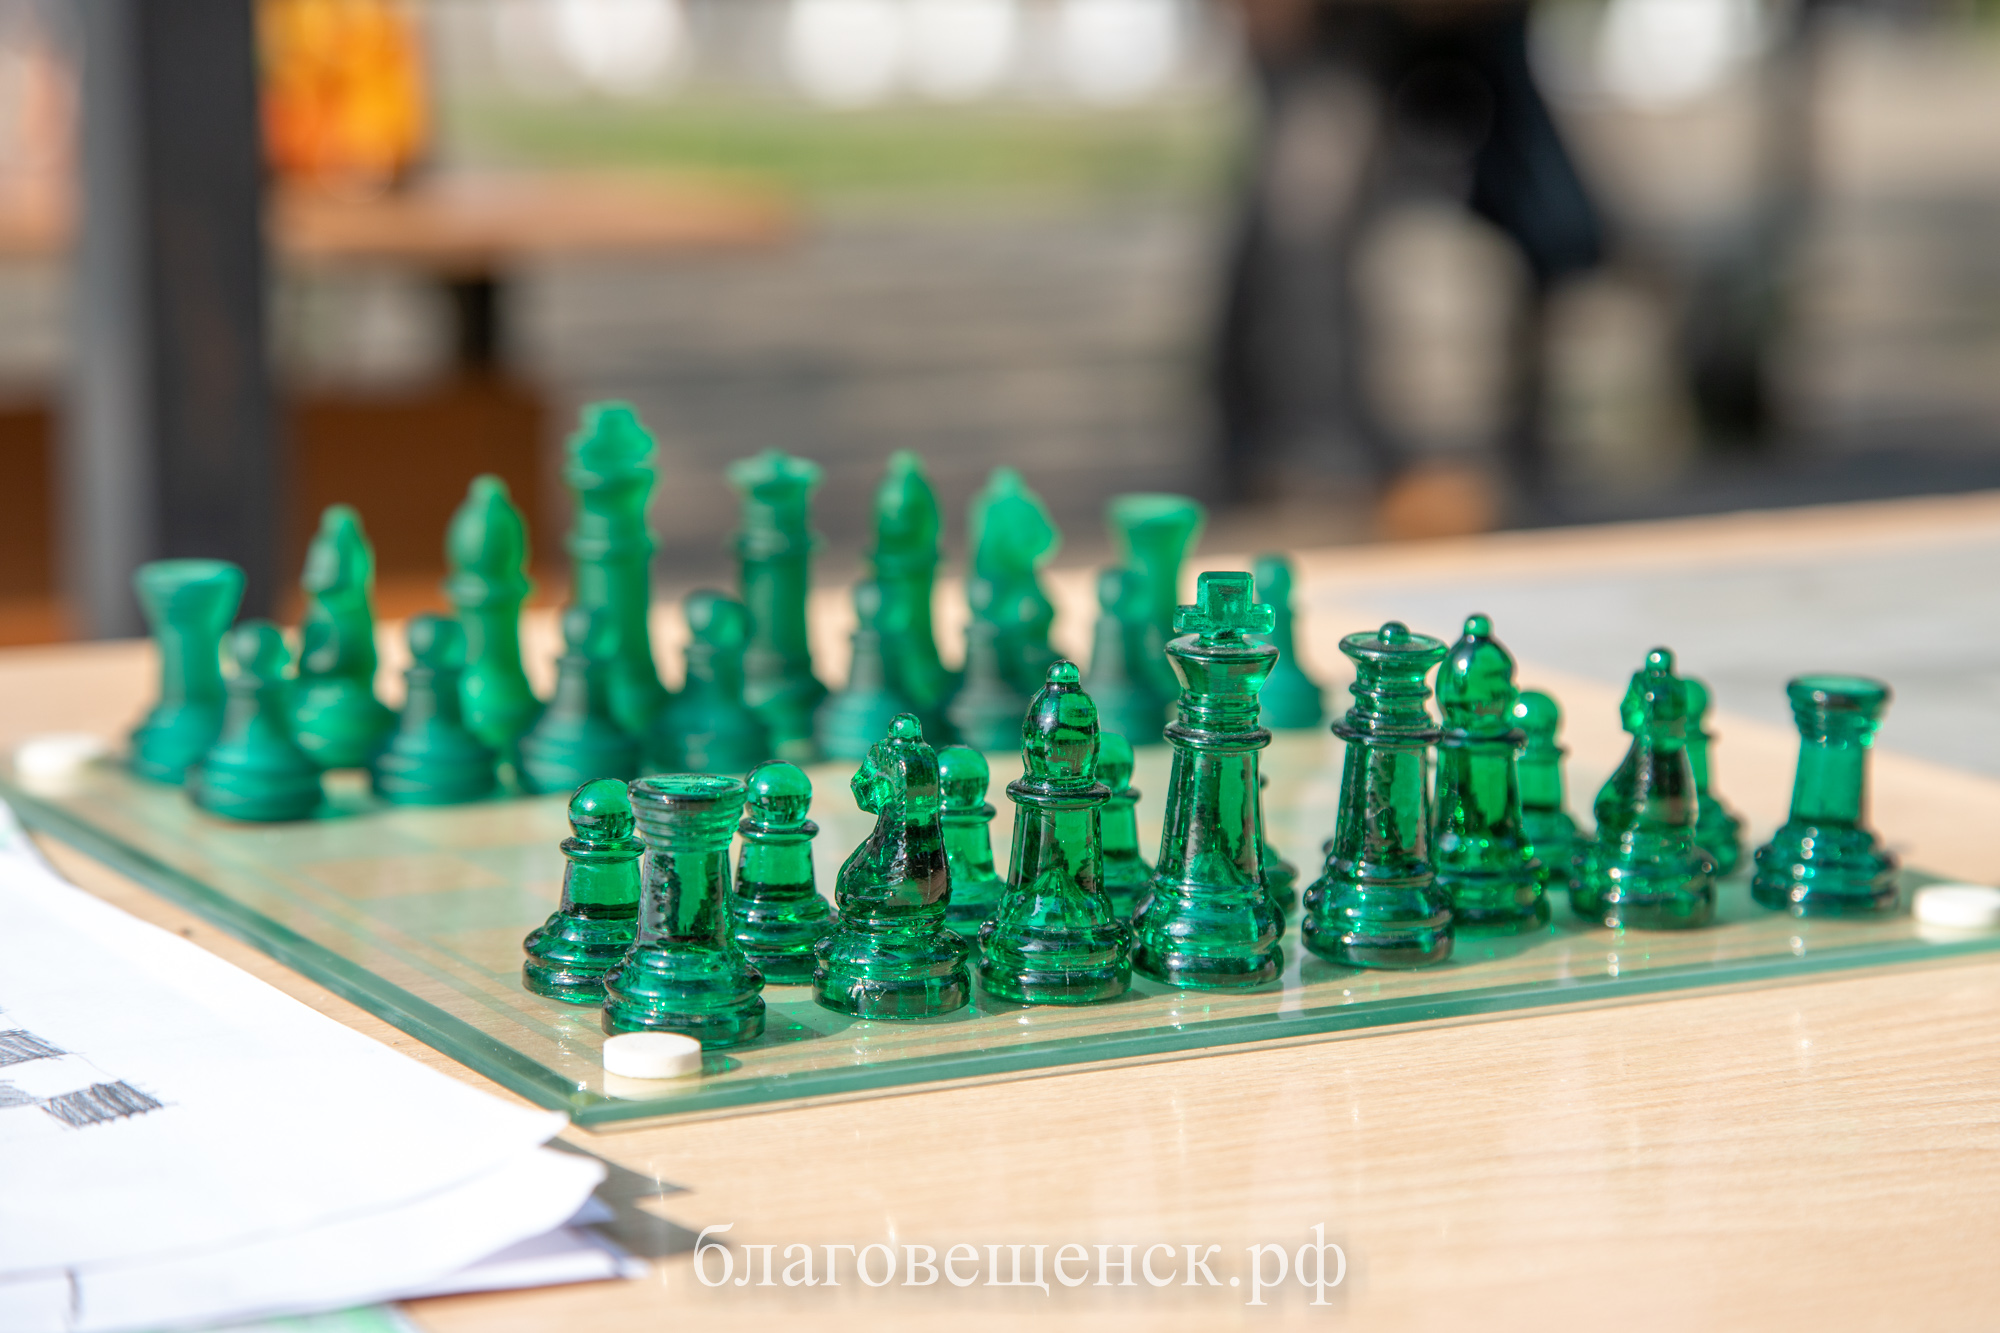 Научиться играть в шахматы и поучаствовать в научных экспериментах зовут благовещенцев в эти выходные 